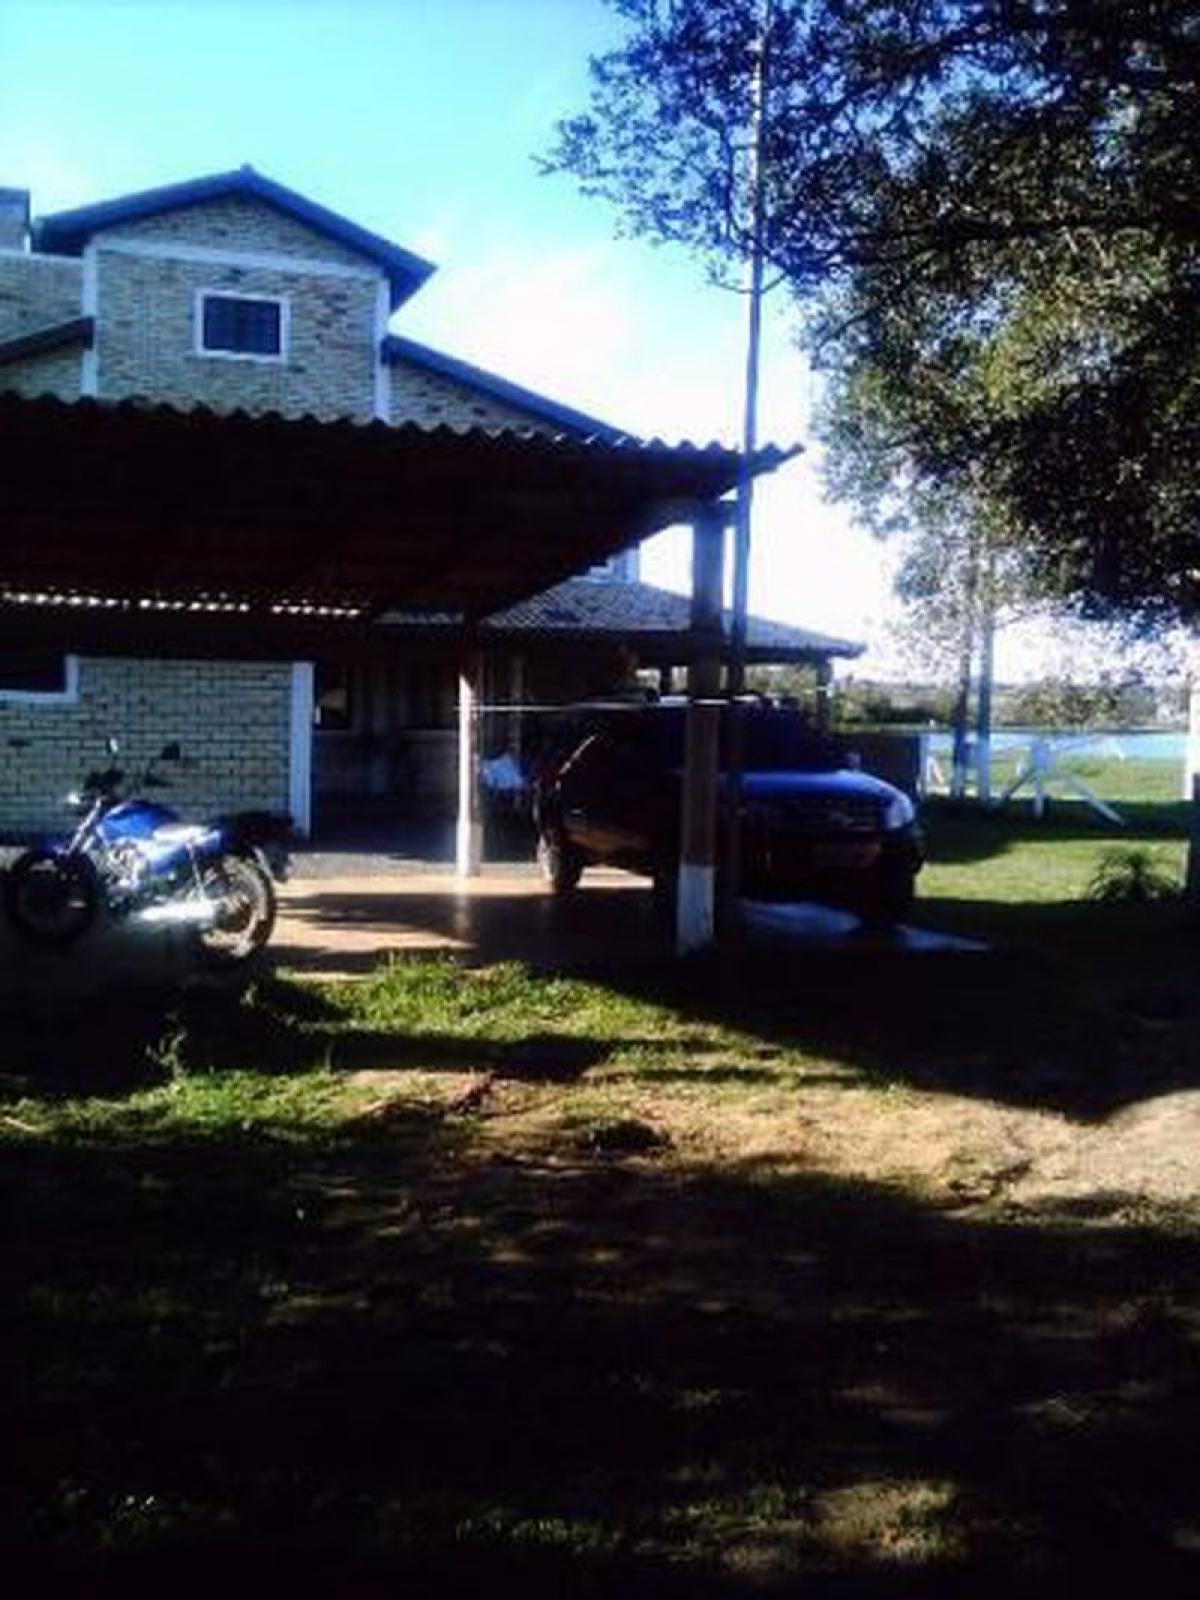 Picture of Farm For Sale in Rio Grande Do Sul, Rio Grande do Sul, Brazil